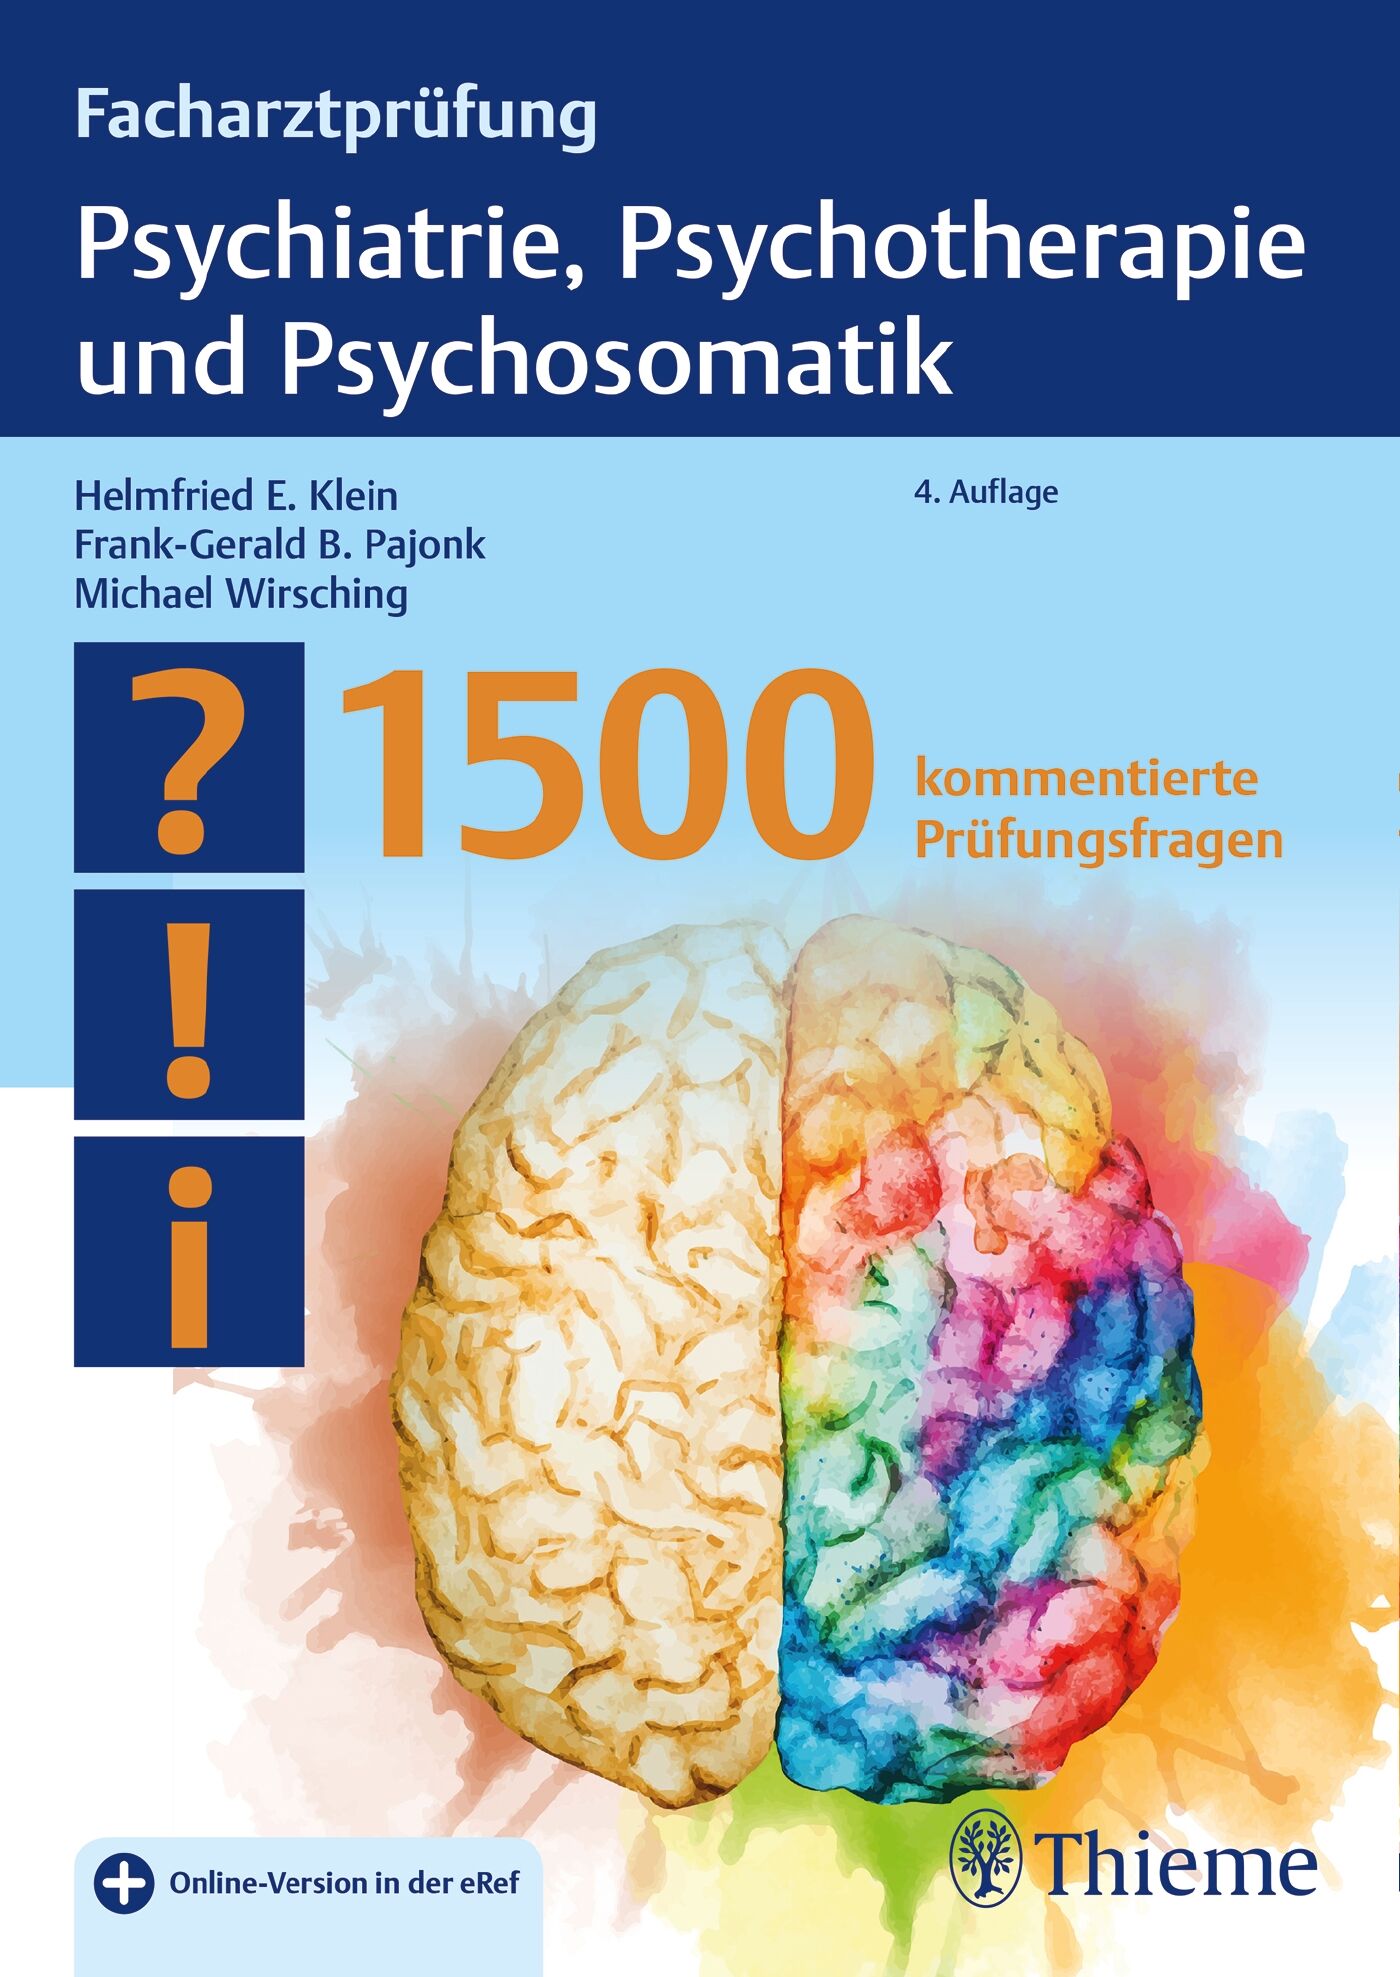 Facharztprüfung Psychiatrie, Psychotherapie und Psychosomatik, 9783132403321